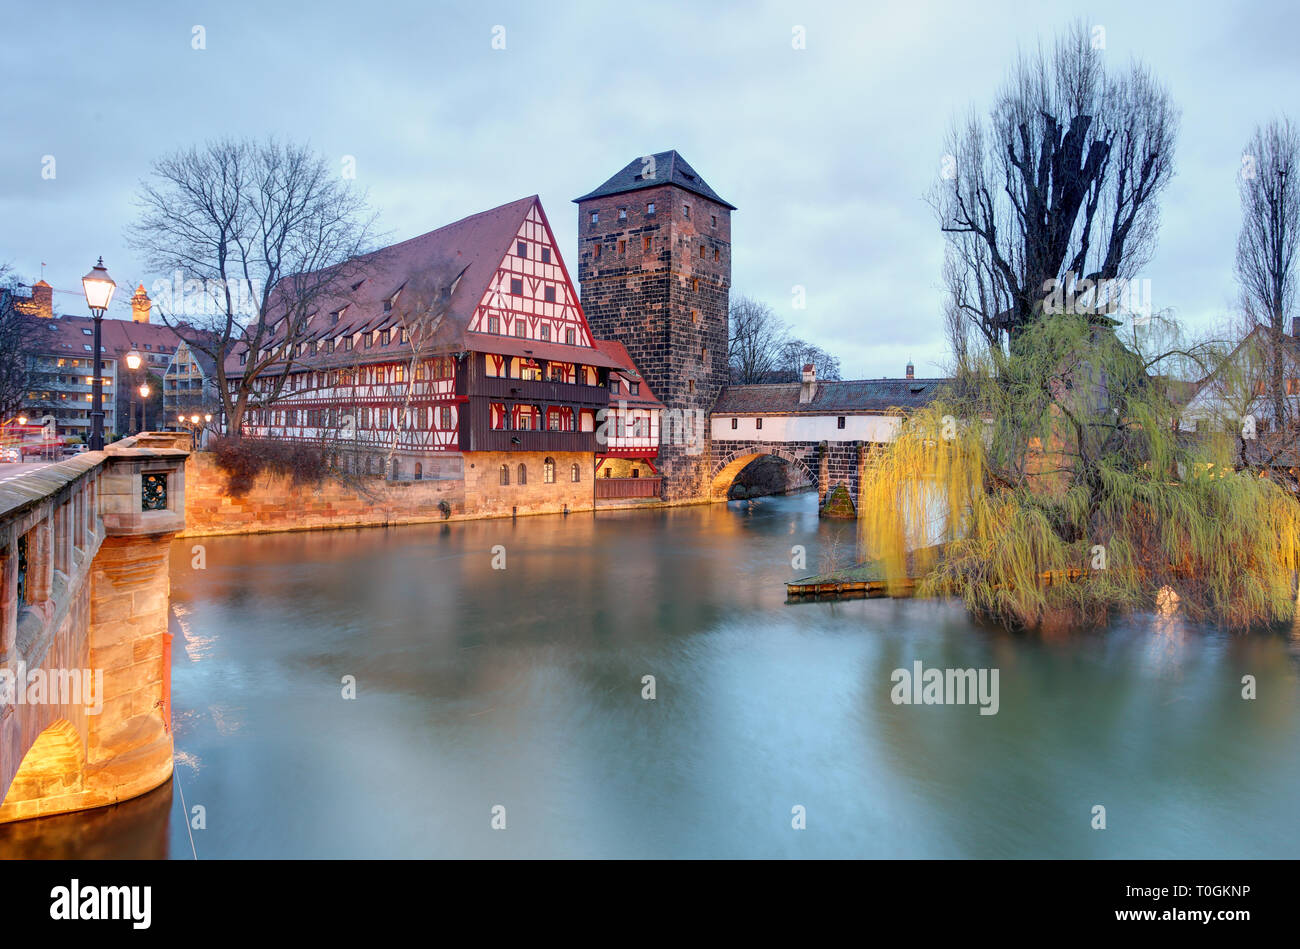 La ville de Nuremberg, en Allemagne, au bord de la rivière Pegnitz Banque D'Images